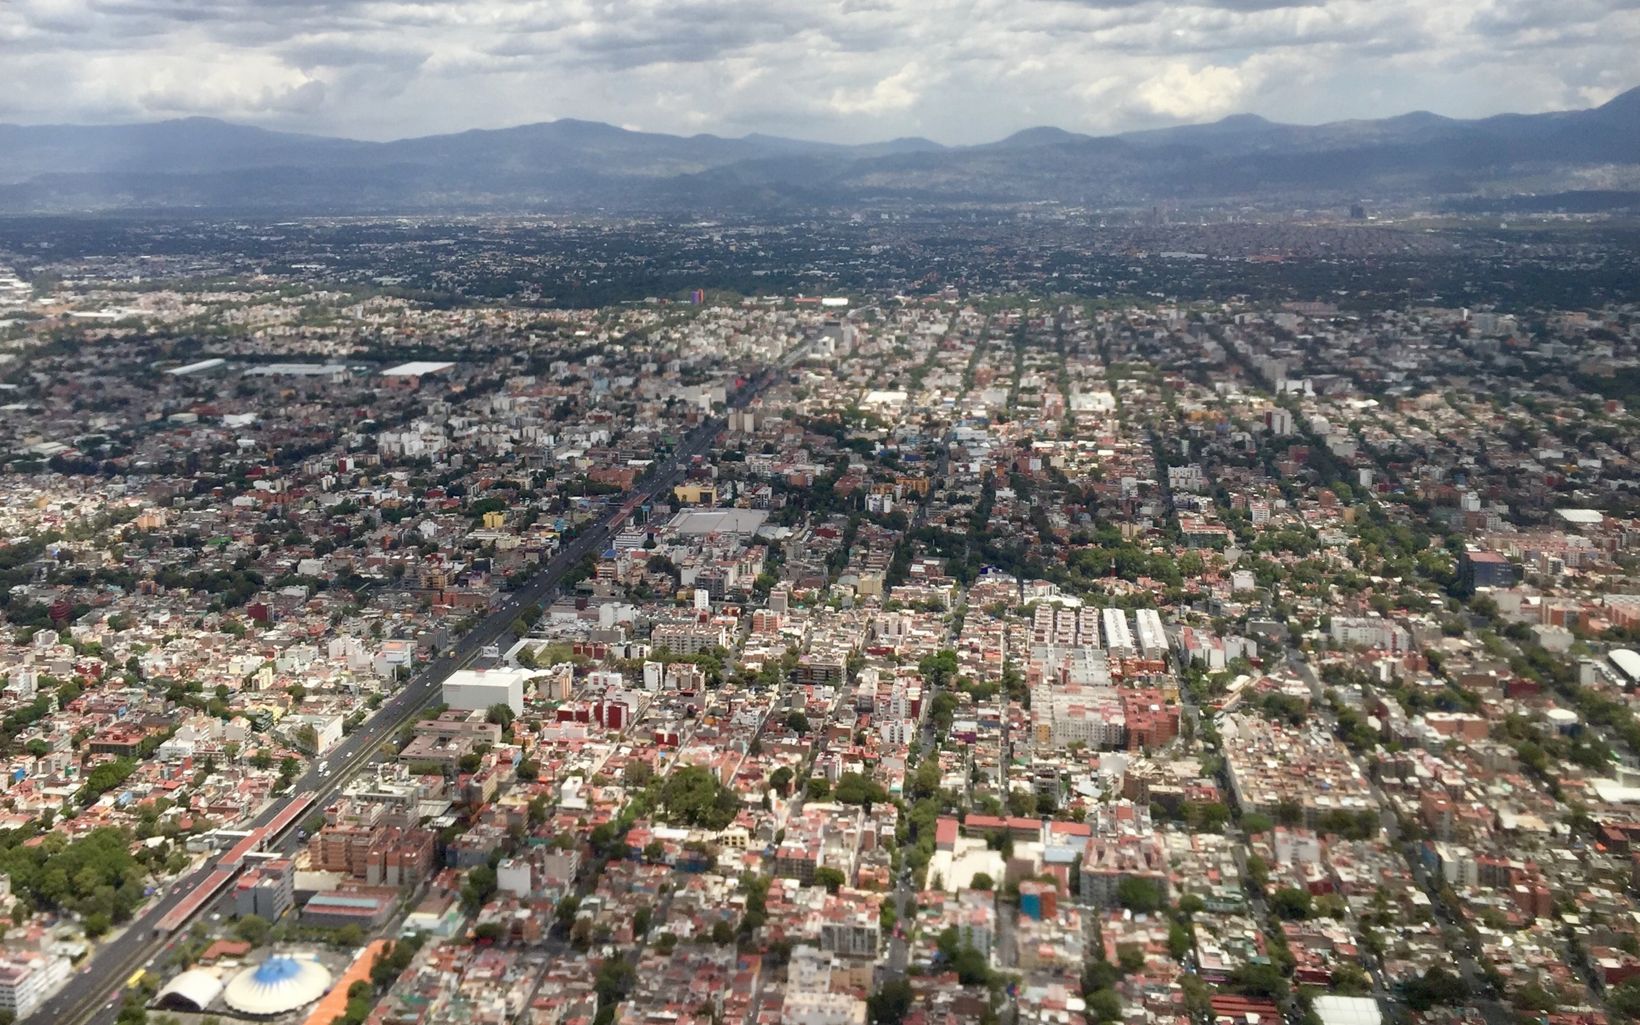 Ciudad de México Son más de ocho millones de habitantes en la capital y otros catorce millones en sus alrededores de personas que se abastecen de las fuentes hídricas.  © Melissa Boisson